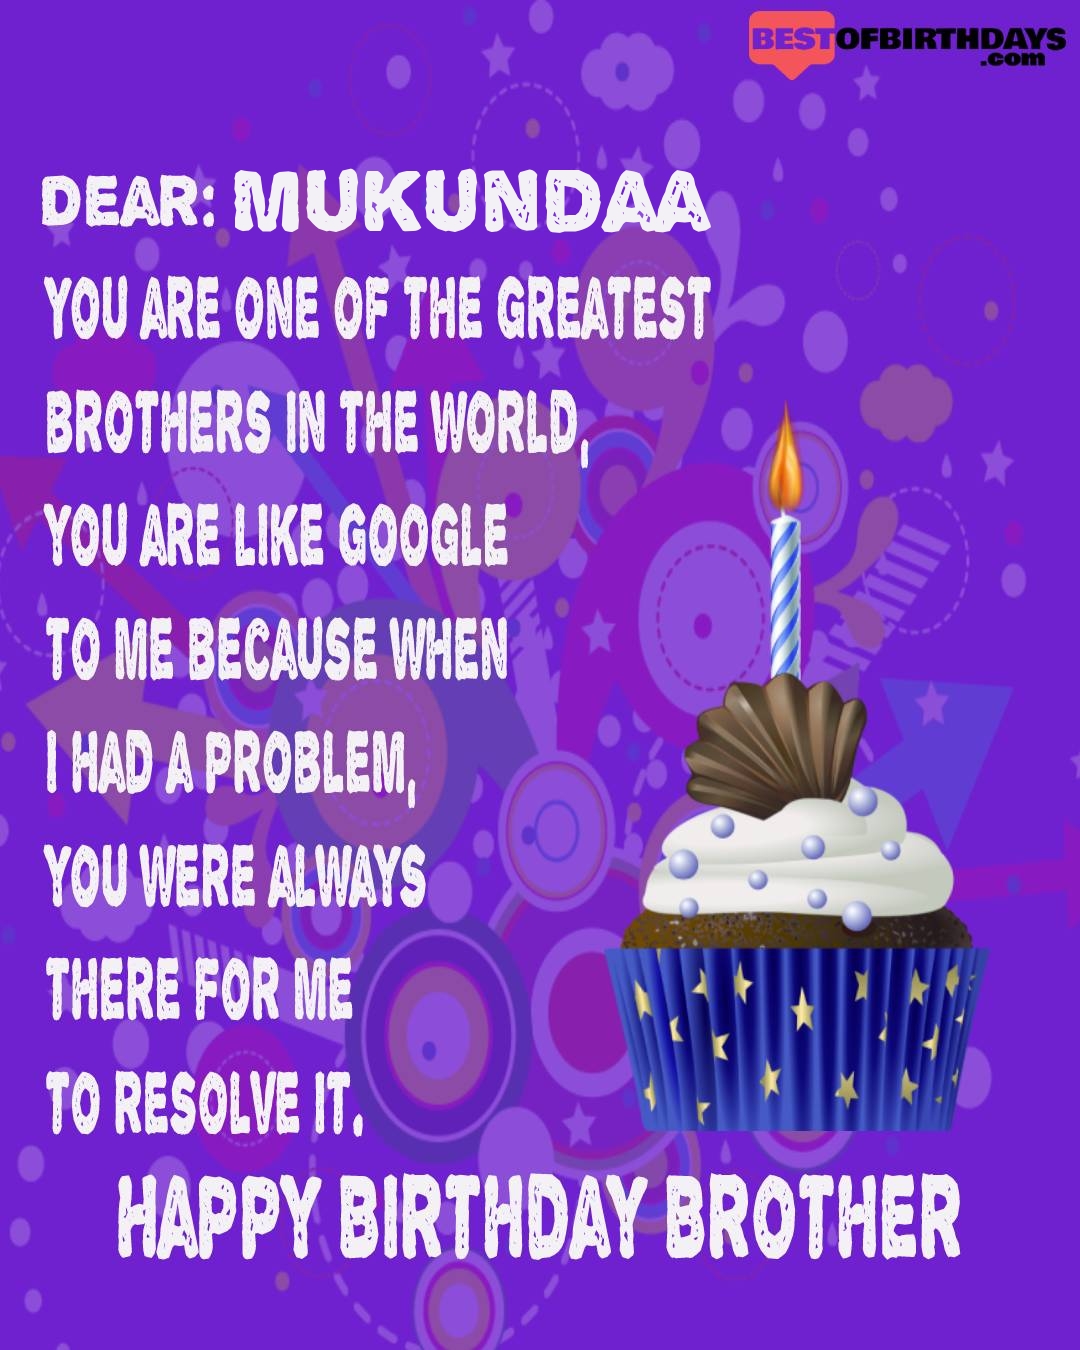 Happy birthday mukundaa bhai brother bro